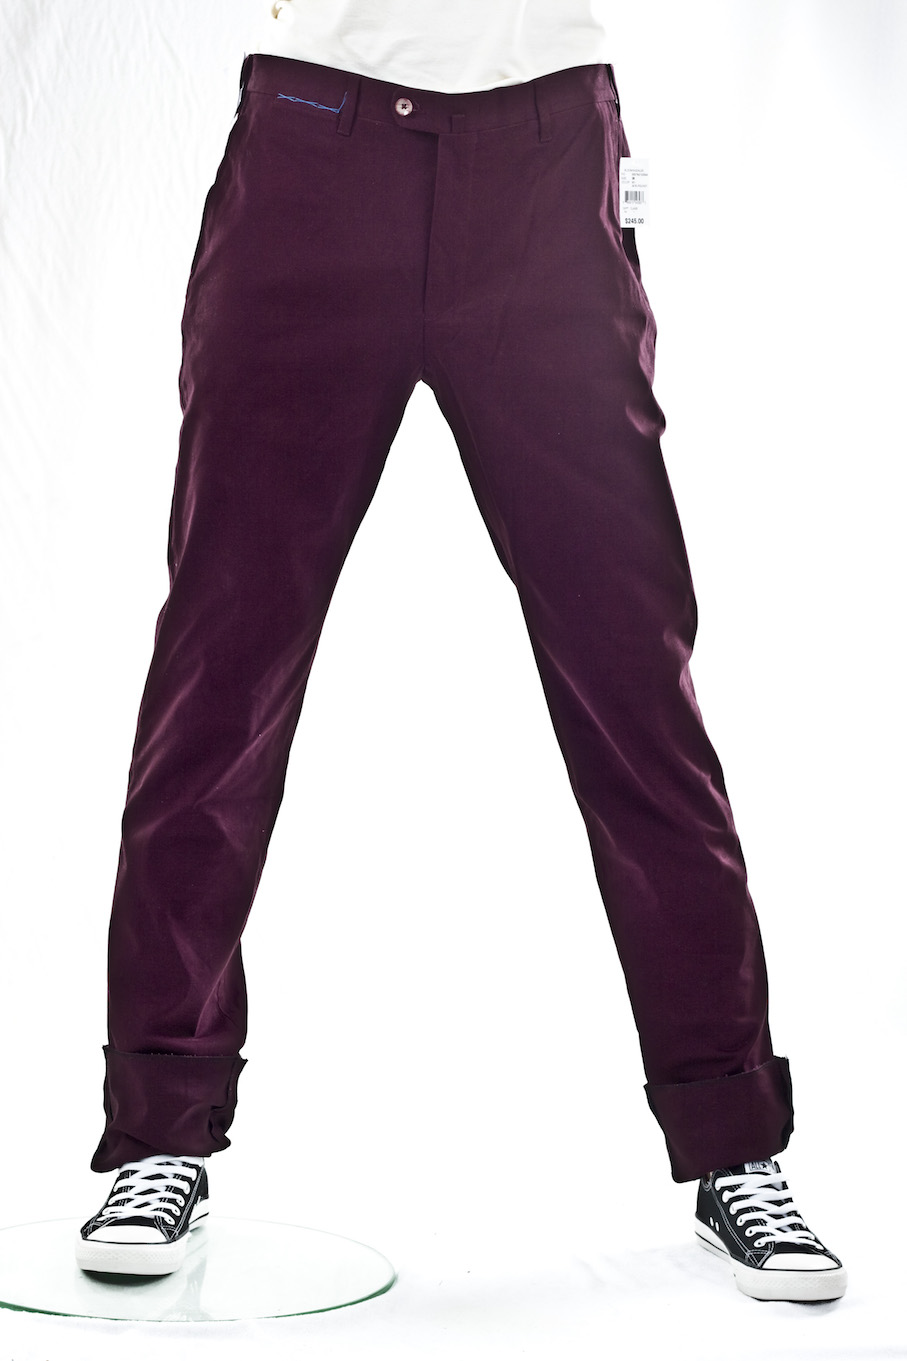 джинсы мужские Aldo Valentini Слаксы - хлопковые брюки мужские Чиносы